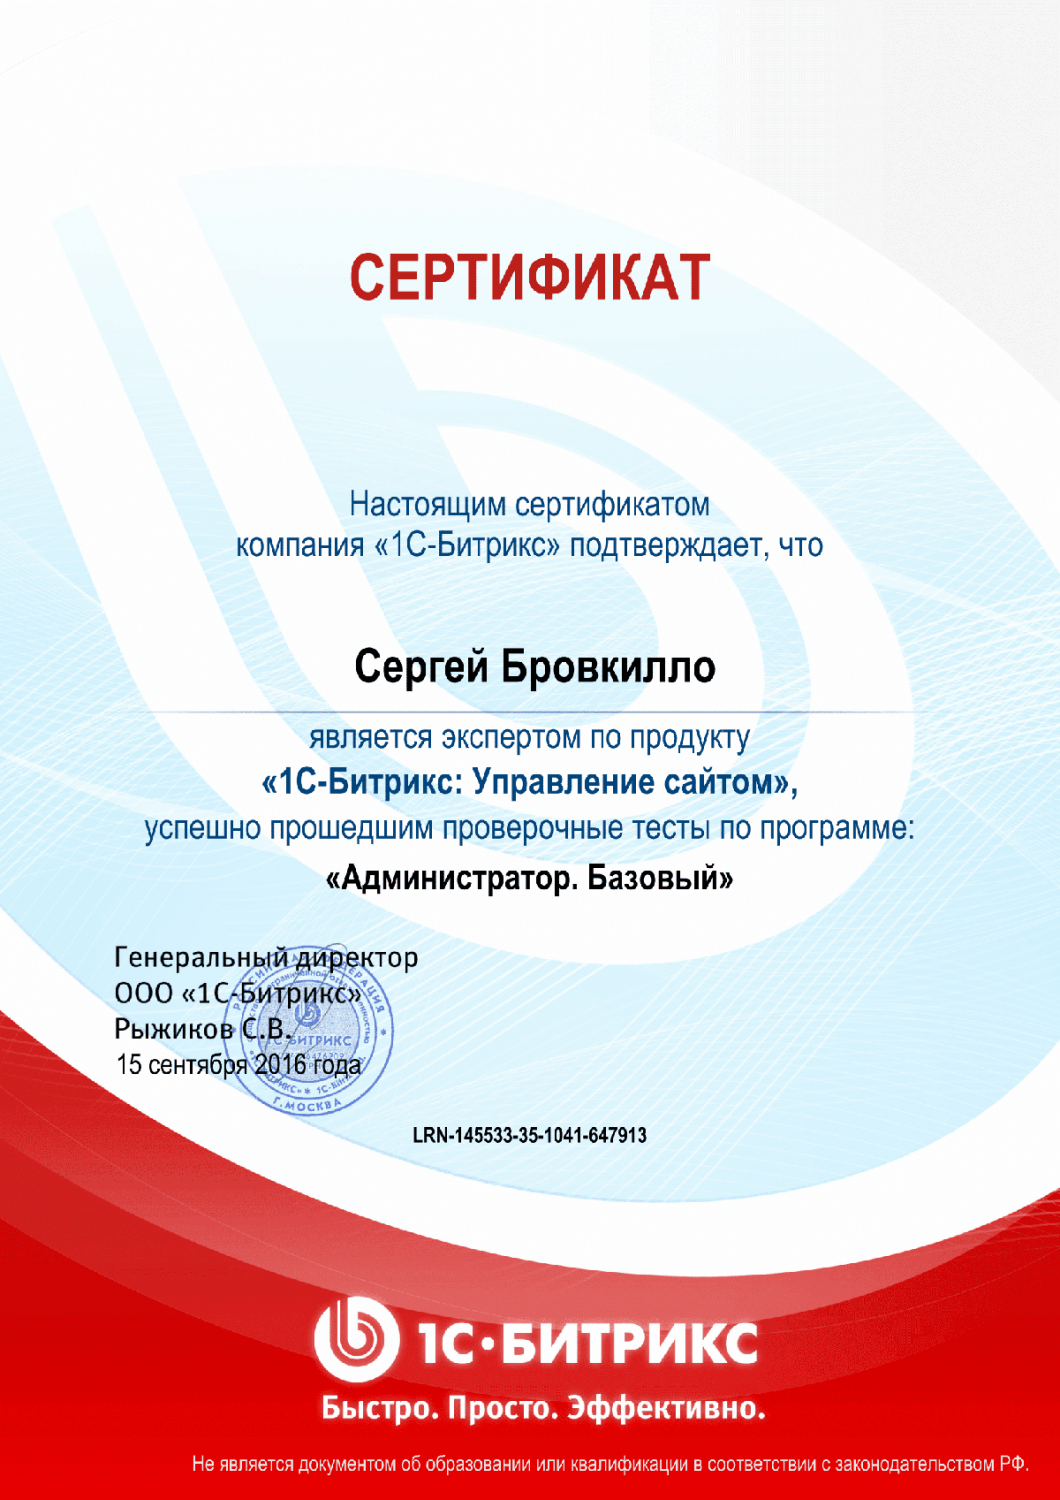 Сертификат эксперта по программе "Администратор. Базовый" в Уфы